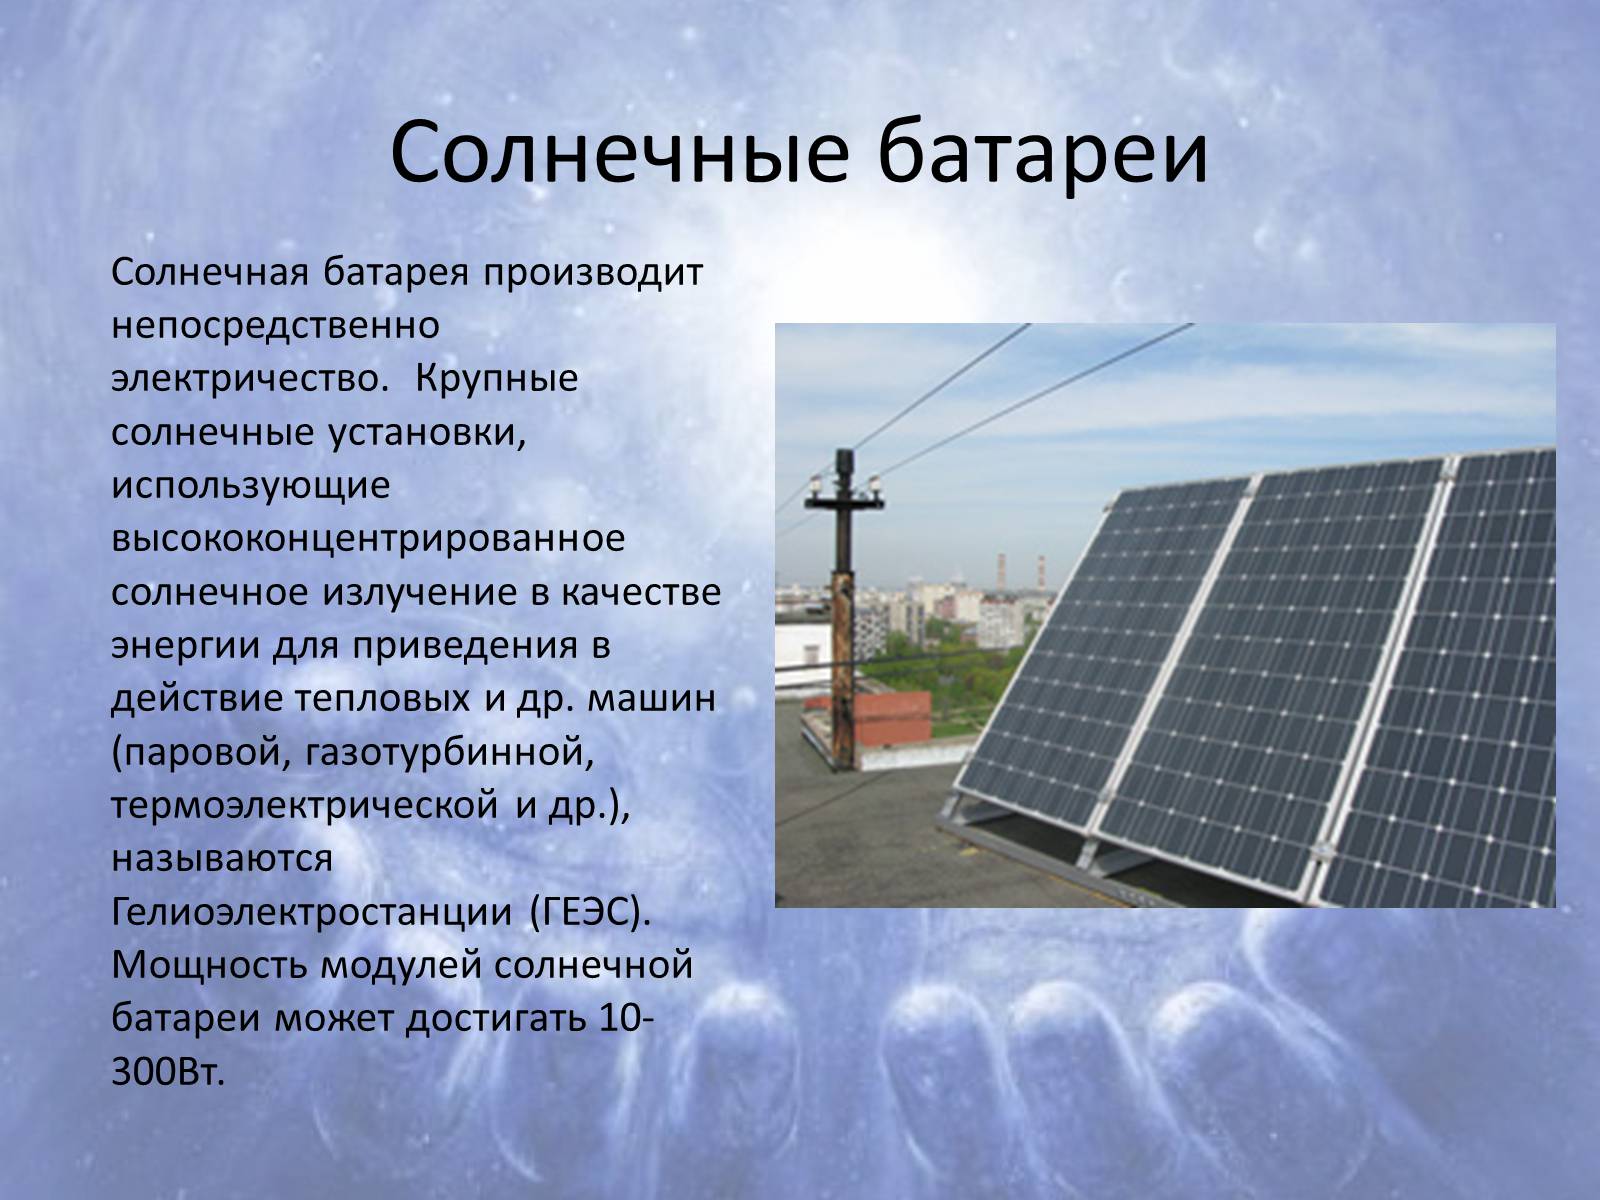 Принцип работы солнечной батареи